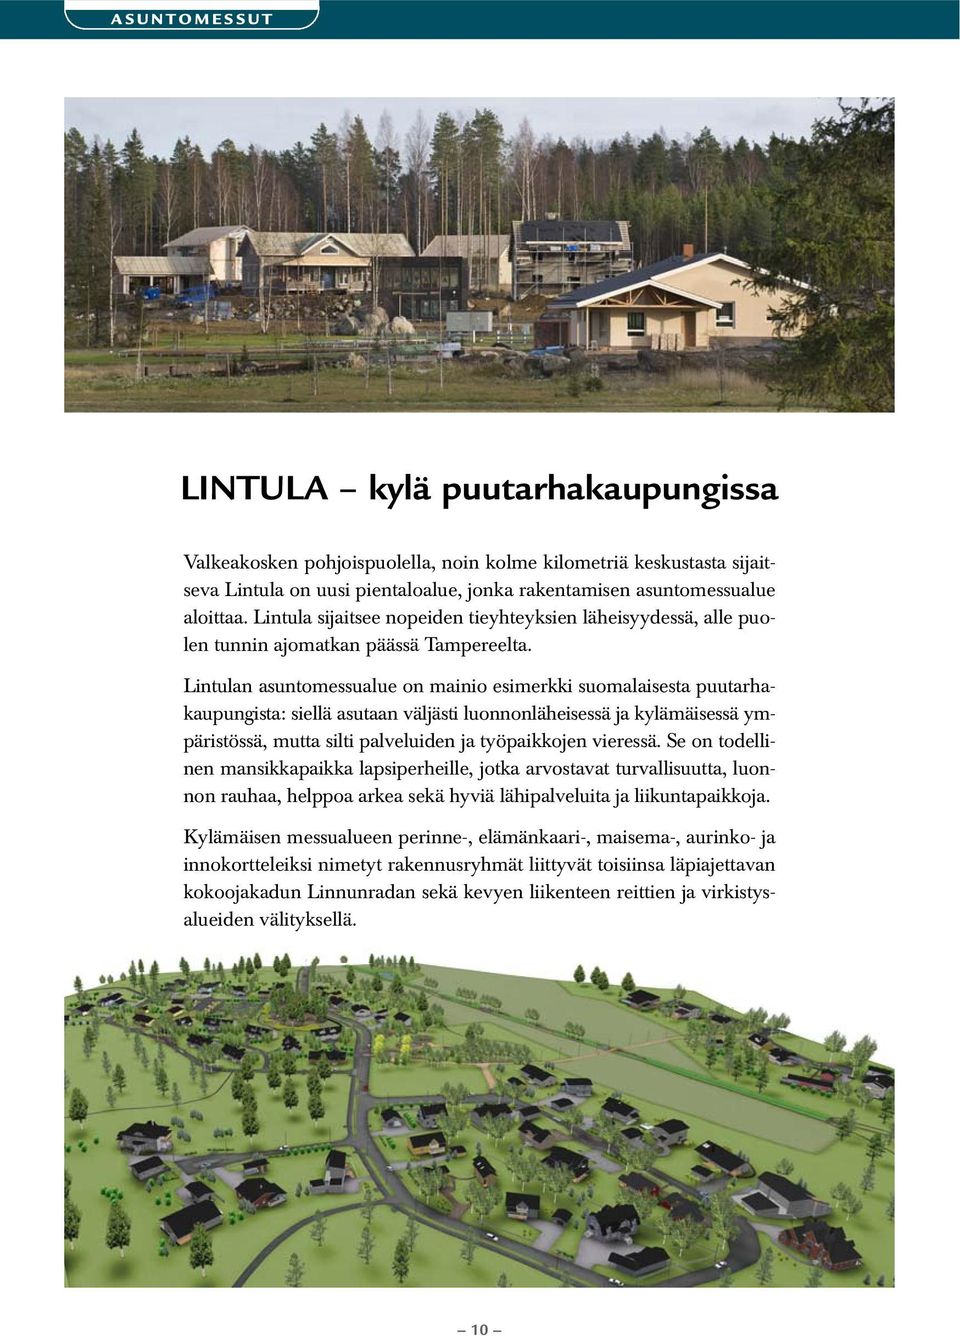 Lintulan asuntomessualue on mainio esimerkki suomalaisesta puutarhakaupungista: siellä asutaan väljästi luonnonläheisessä ja kylämäisessä ympäristössä, mutta silti palveluiden ja työpaikkojen